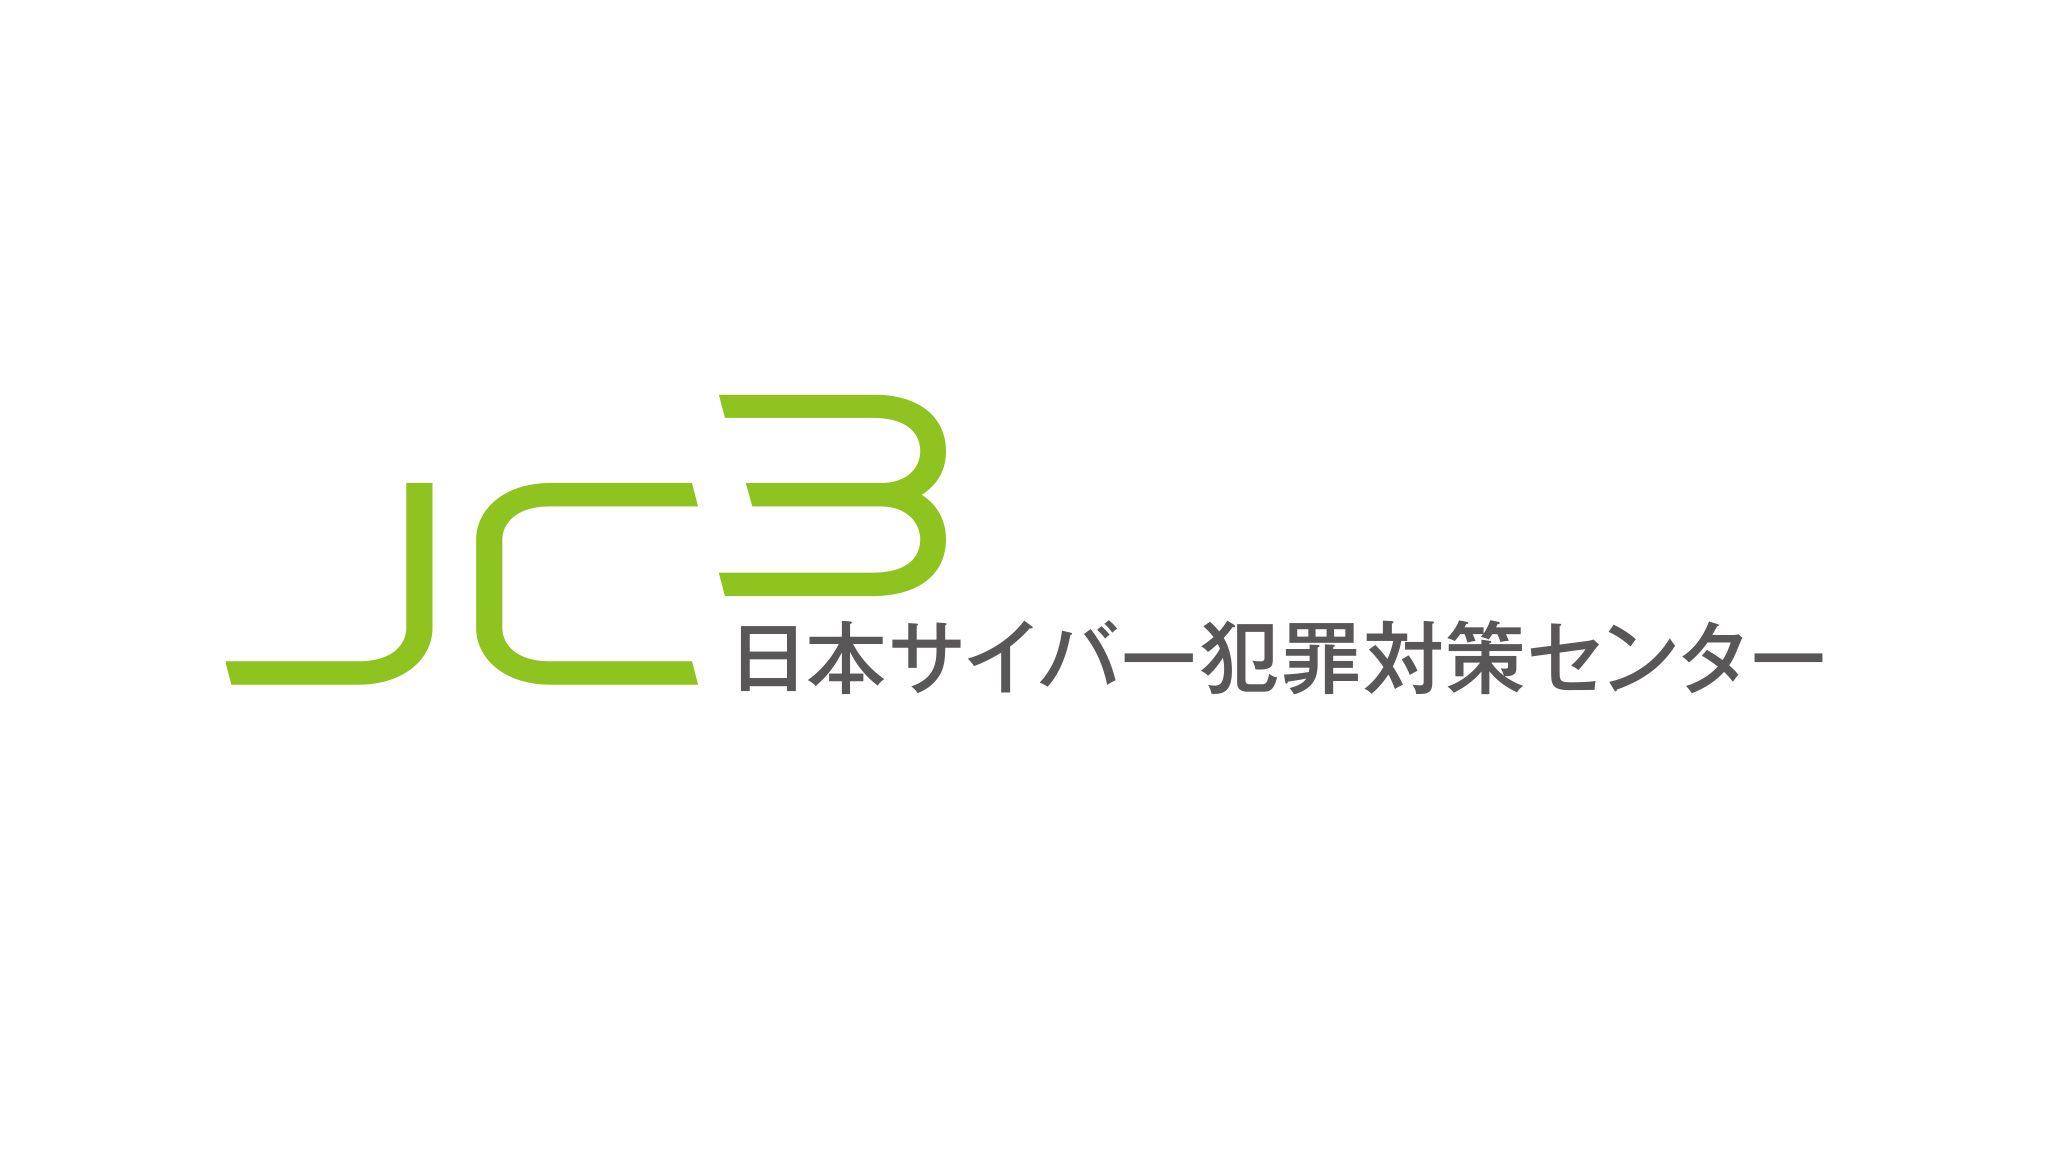 一般財団法人日本サイバー犯罪対策センター（JC3）　ブランドロゴ開発・CIデザイン開発